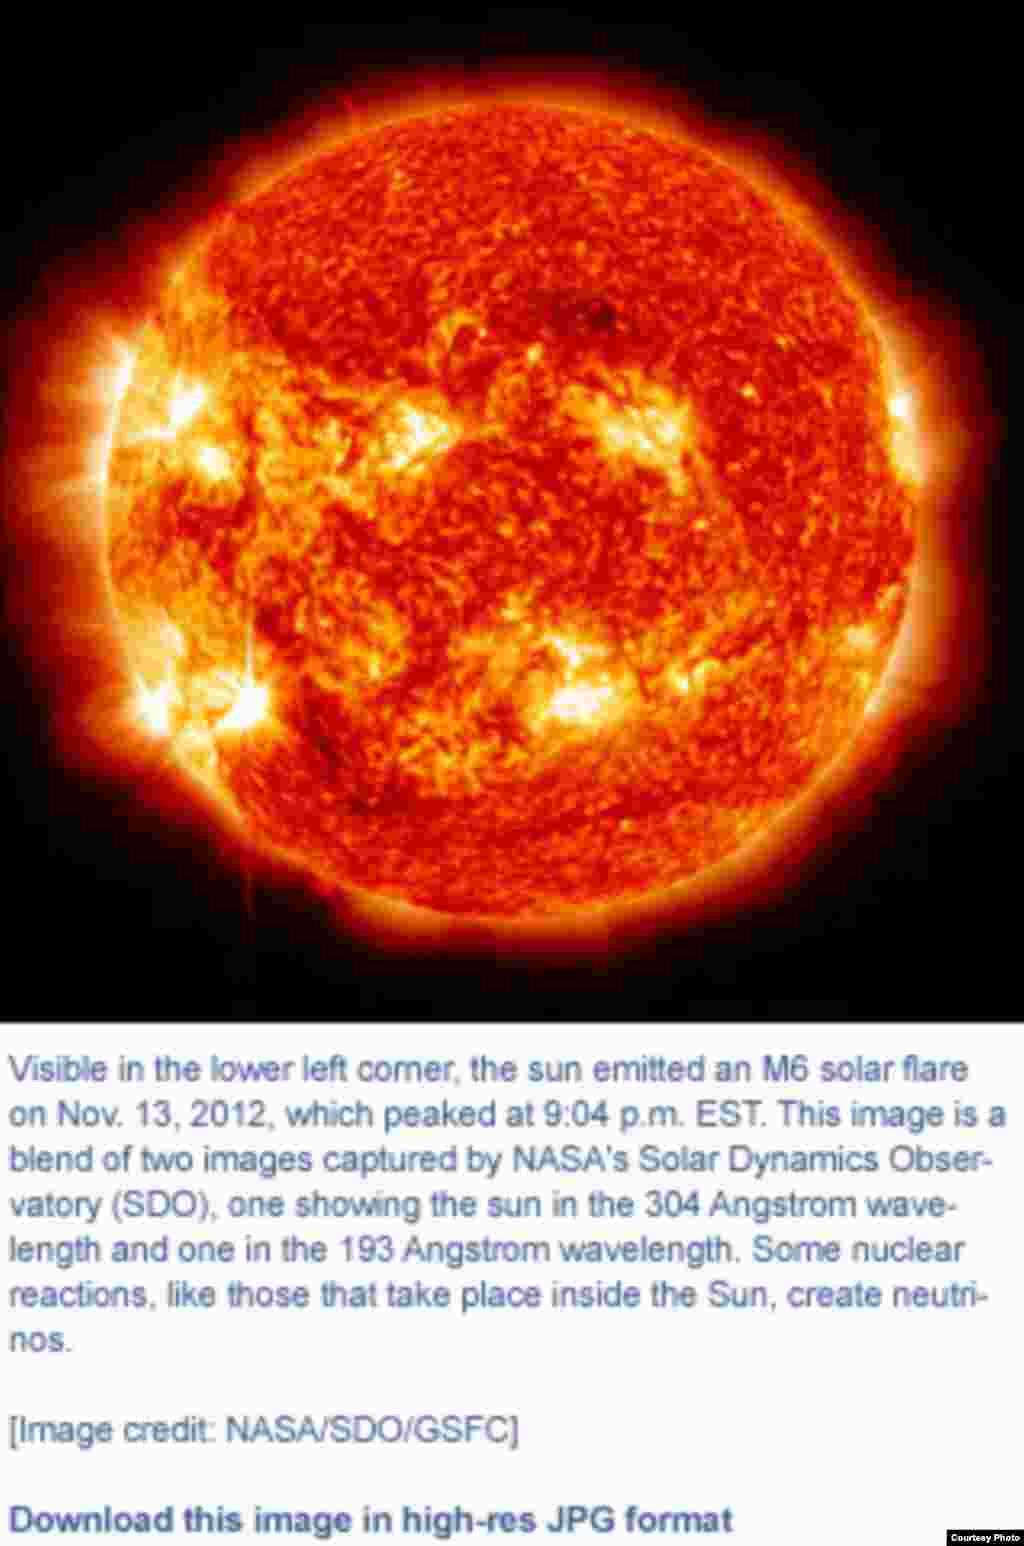 دانشمندان چینی به تولد ذراتی به نام نئوتریون در خورشید و سفرشان به زمین با نزدیک به سرعت نور تحقیق کردند. 